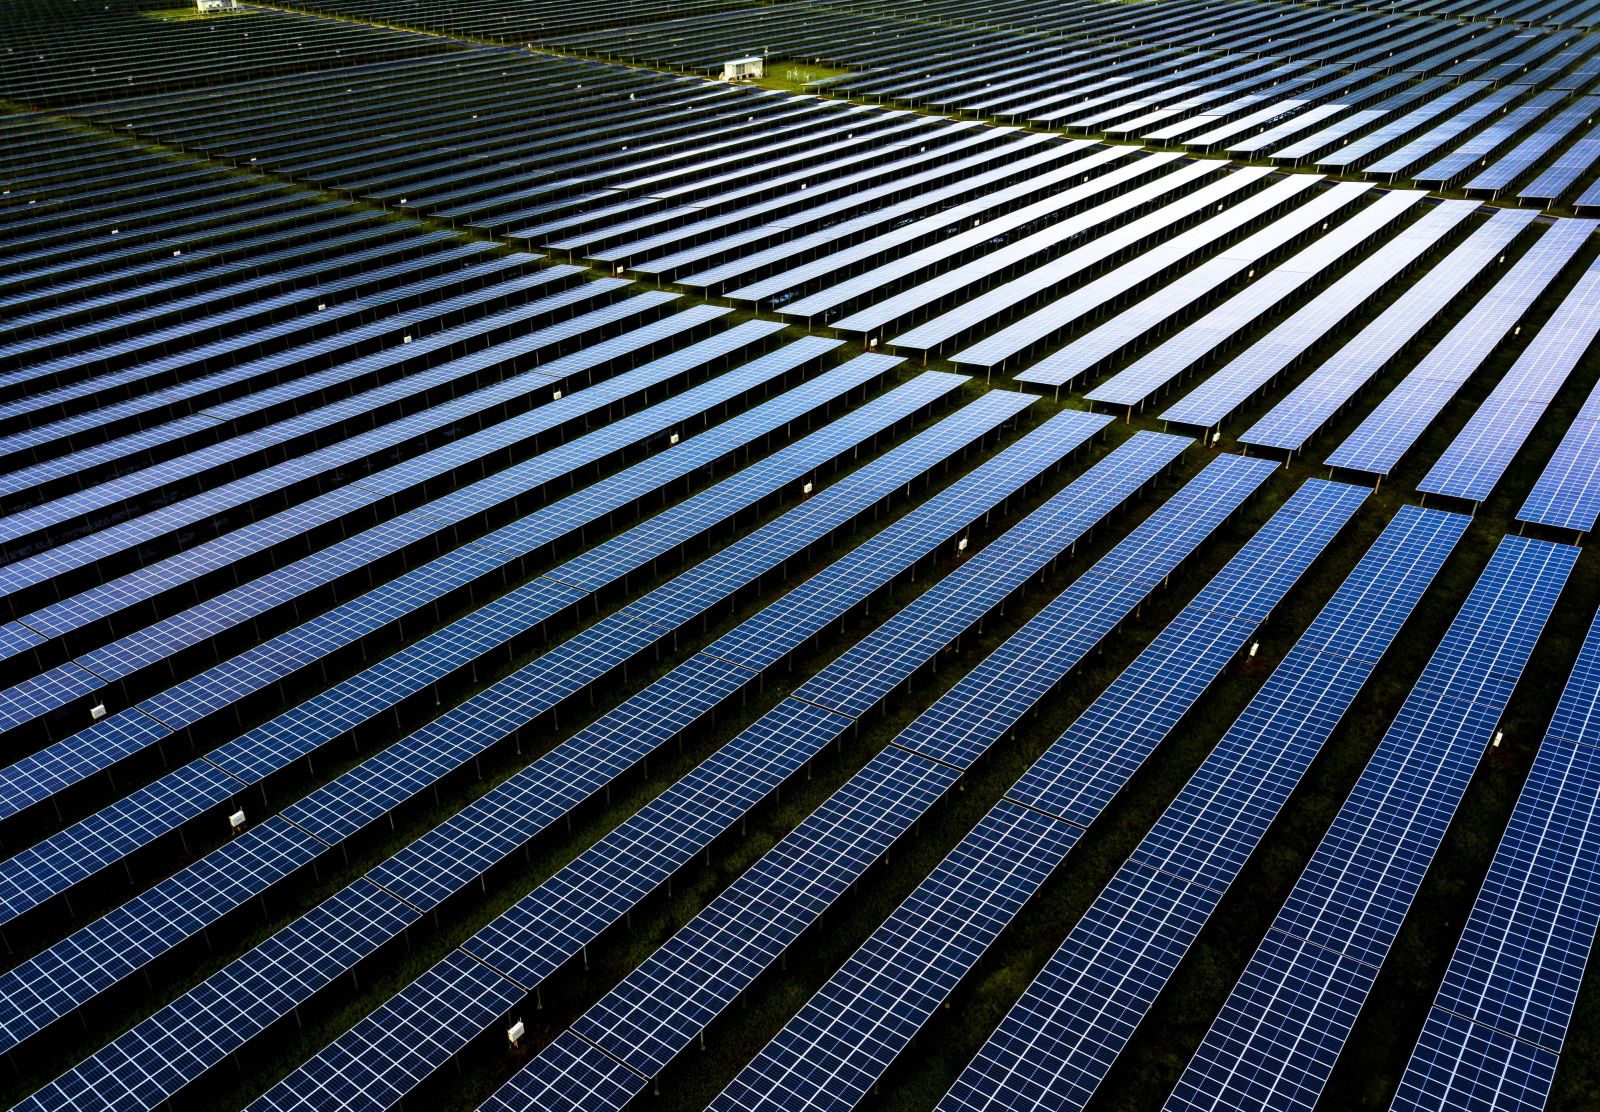 Nhà máy điện mặt trời khai sáng giá trị mới cho đất nghèo